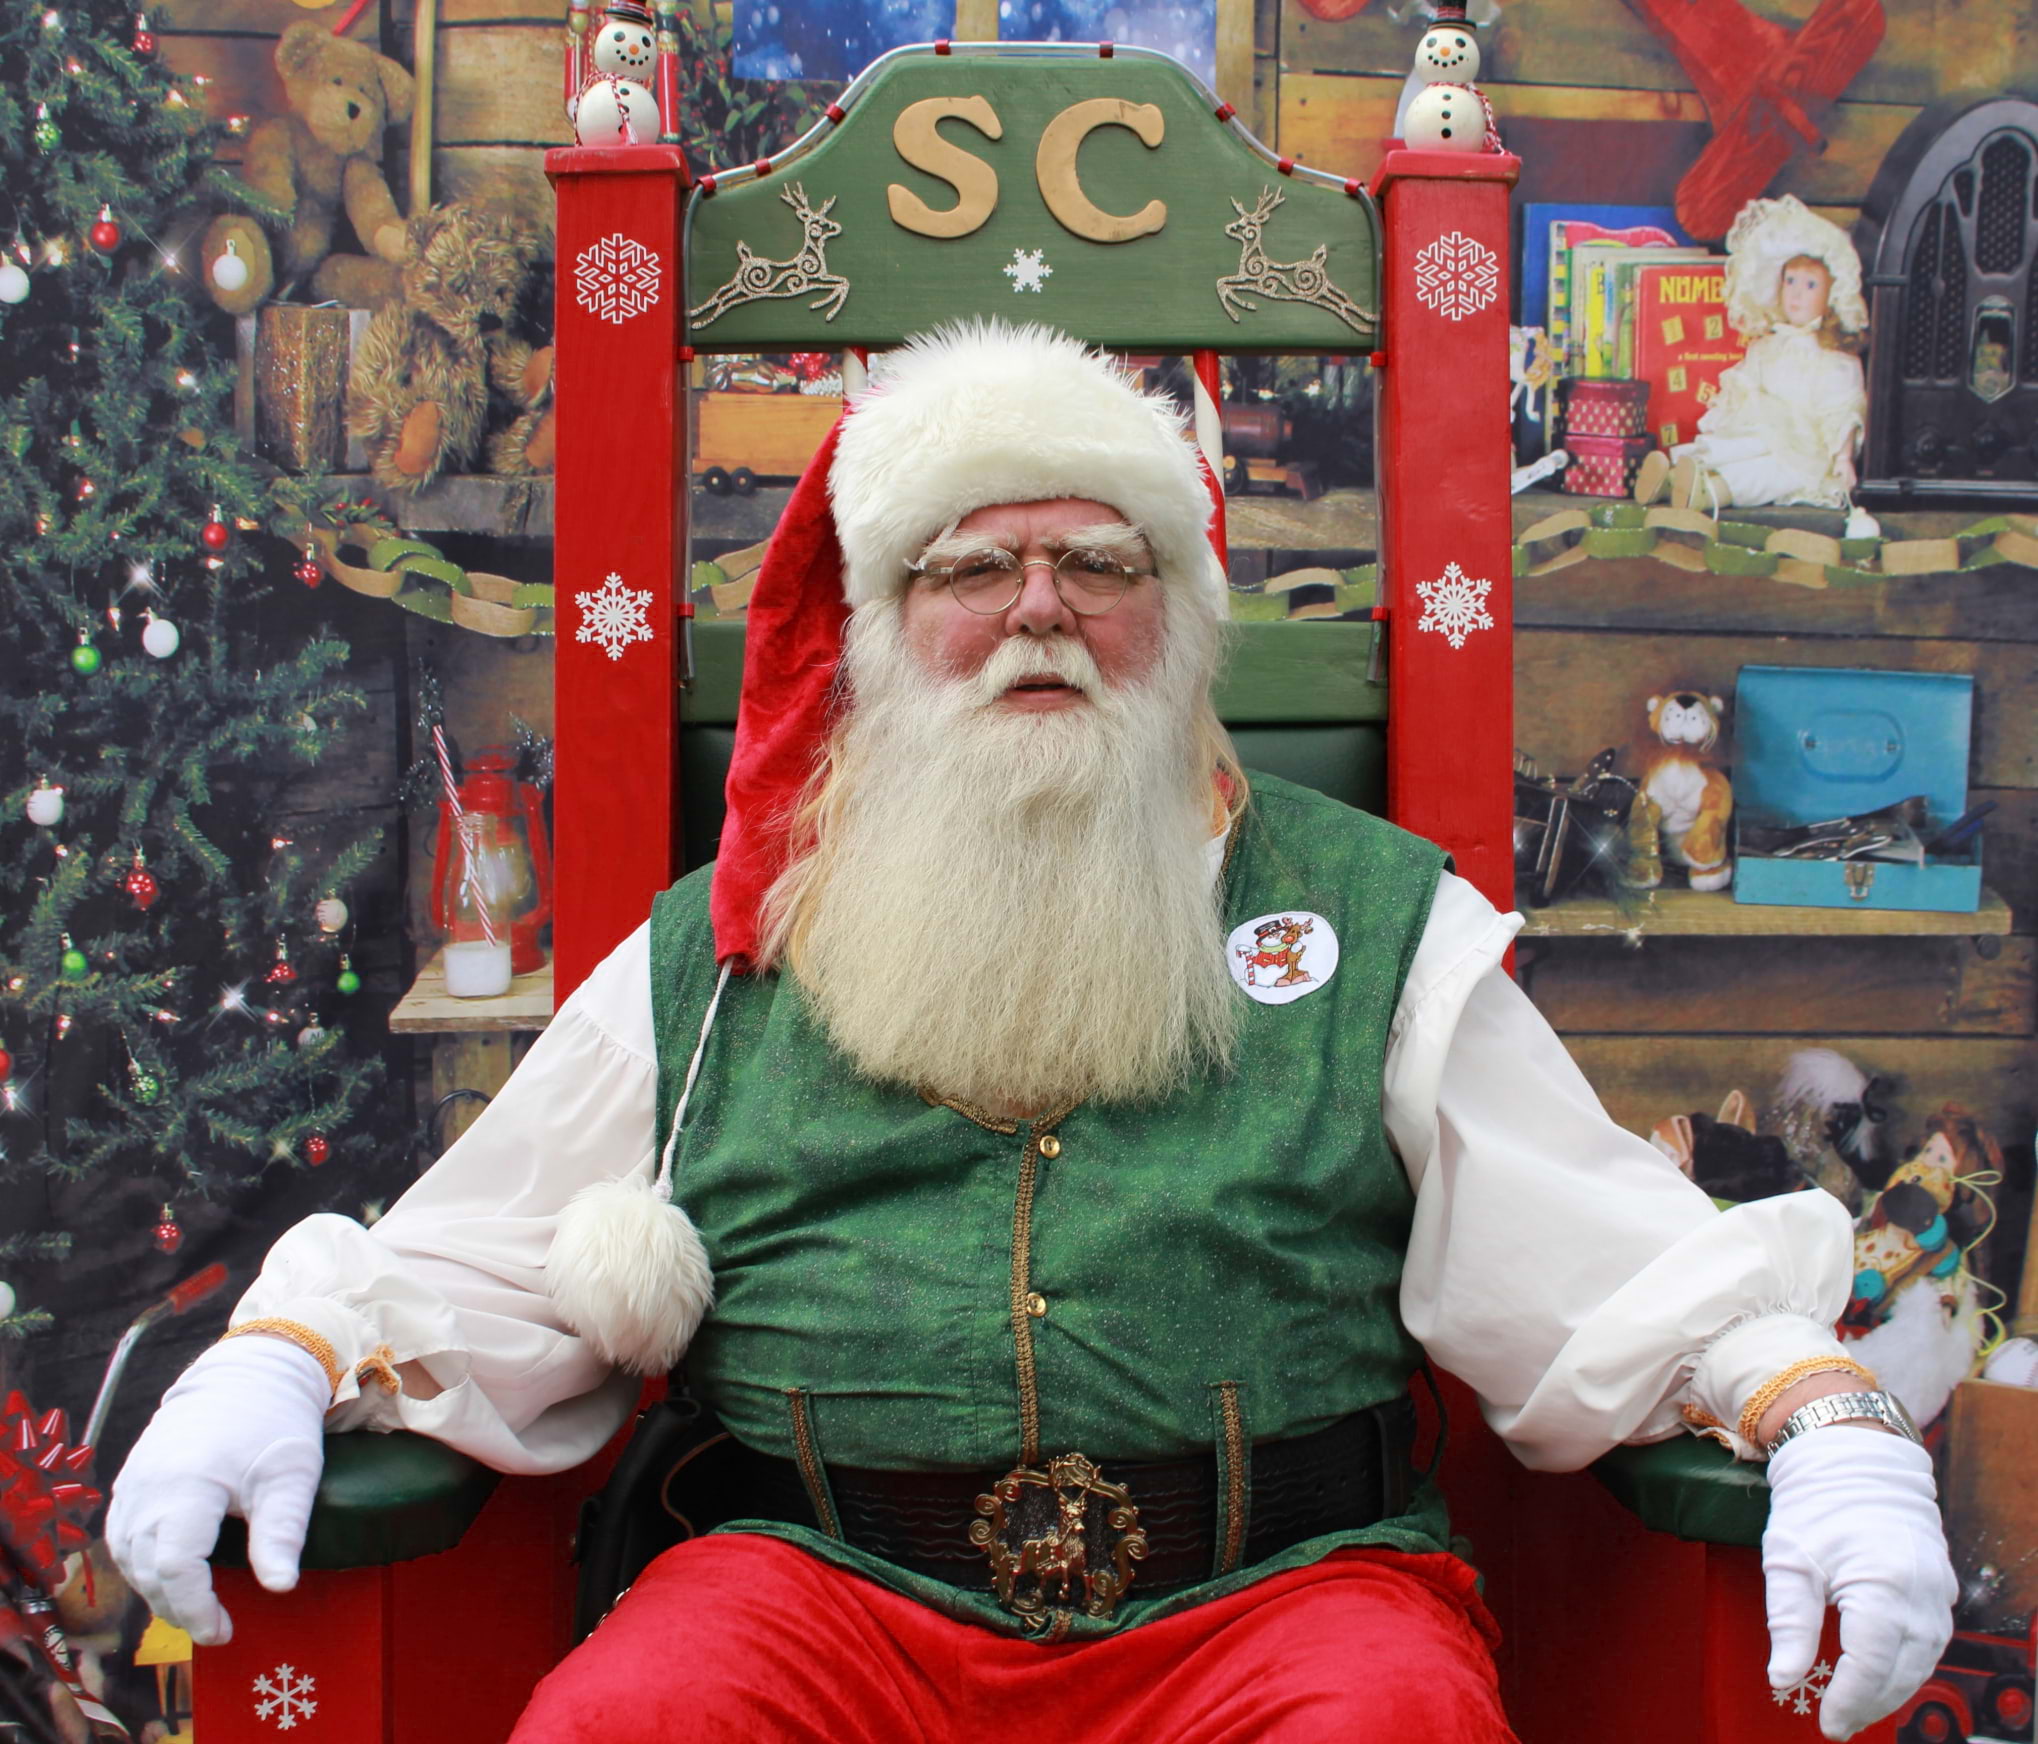 Santa's treating himself real nice this year and setting up shop at The Ritz